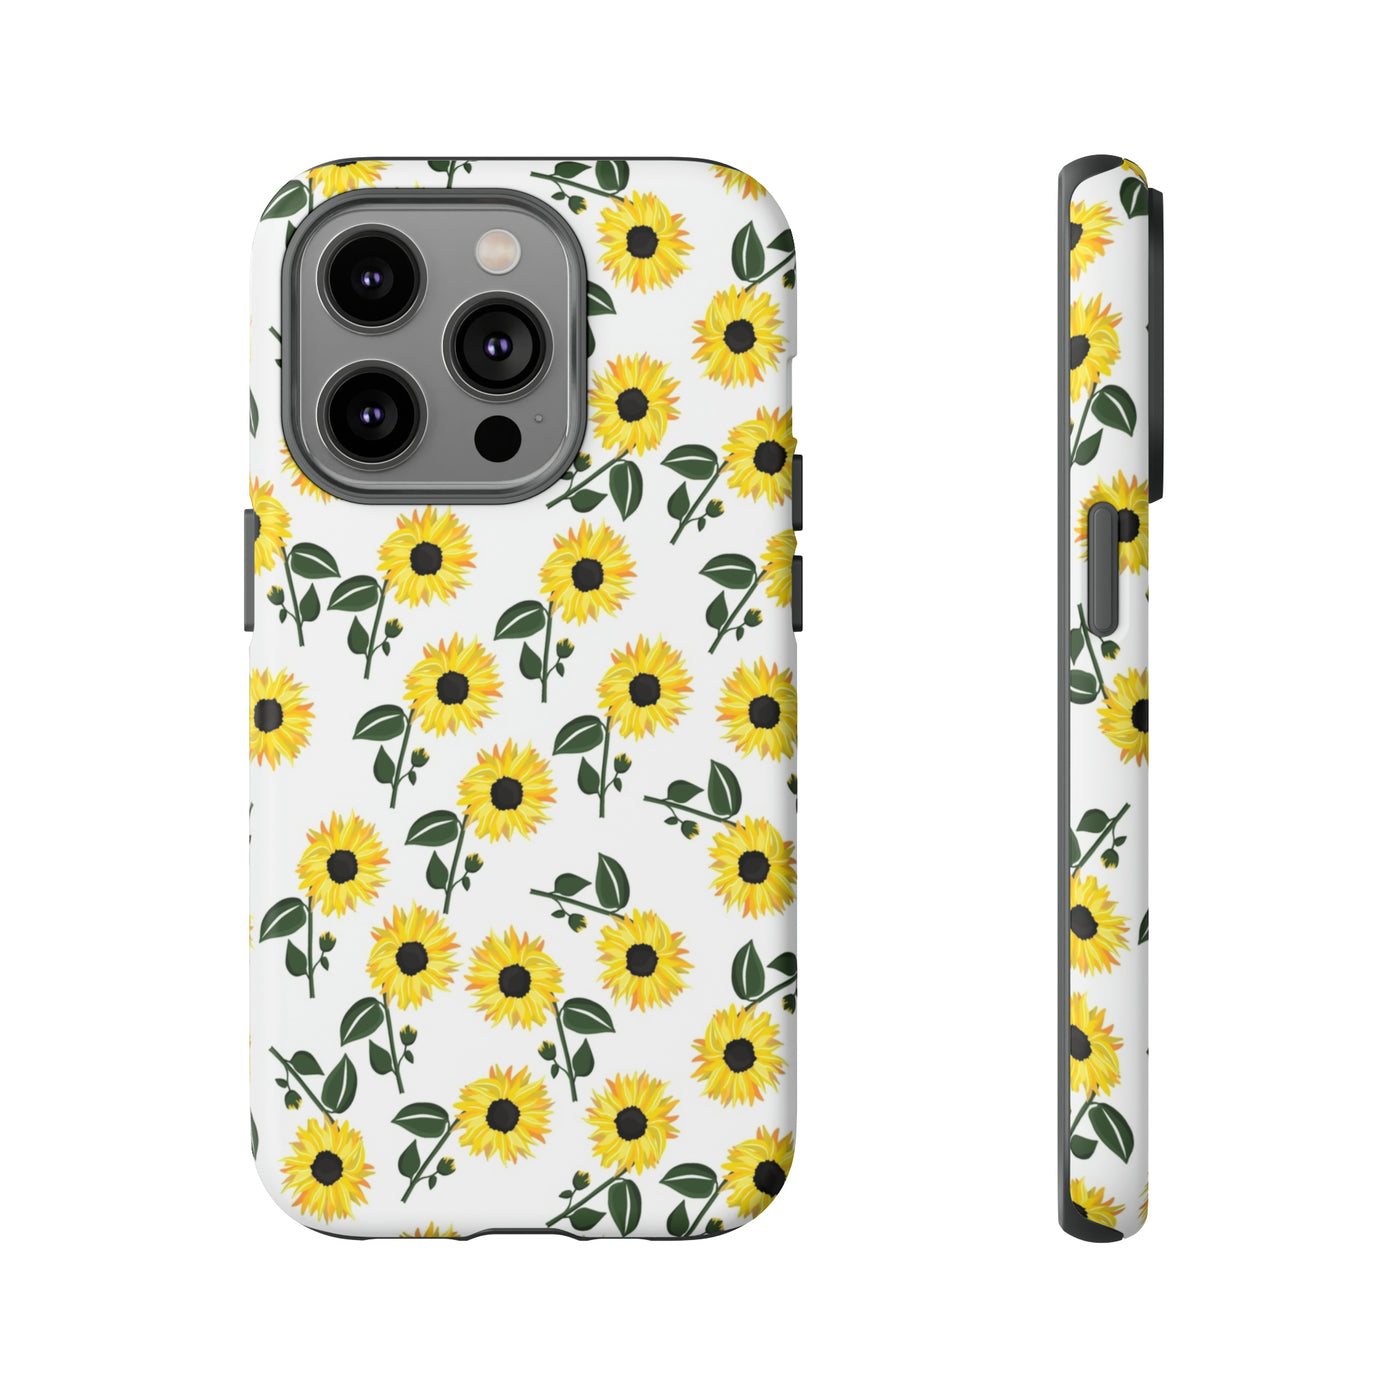 Sunflower Case